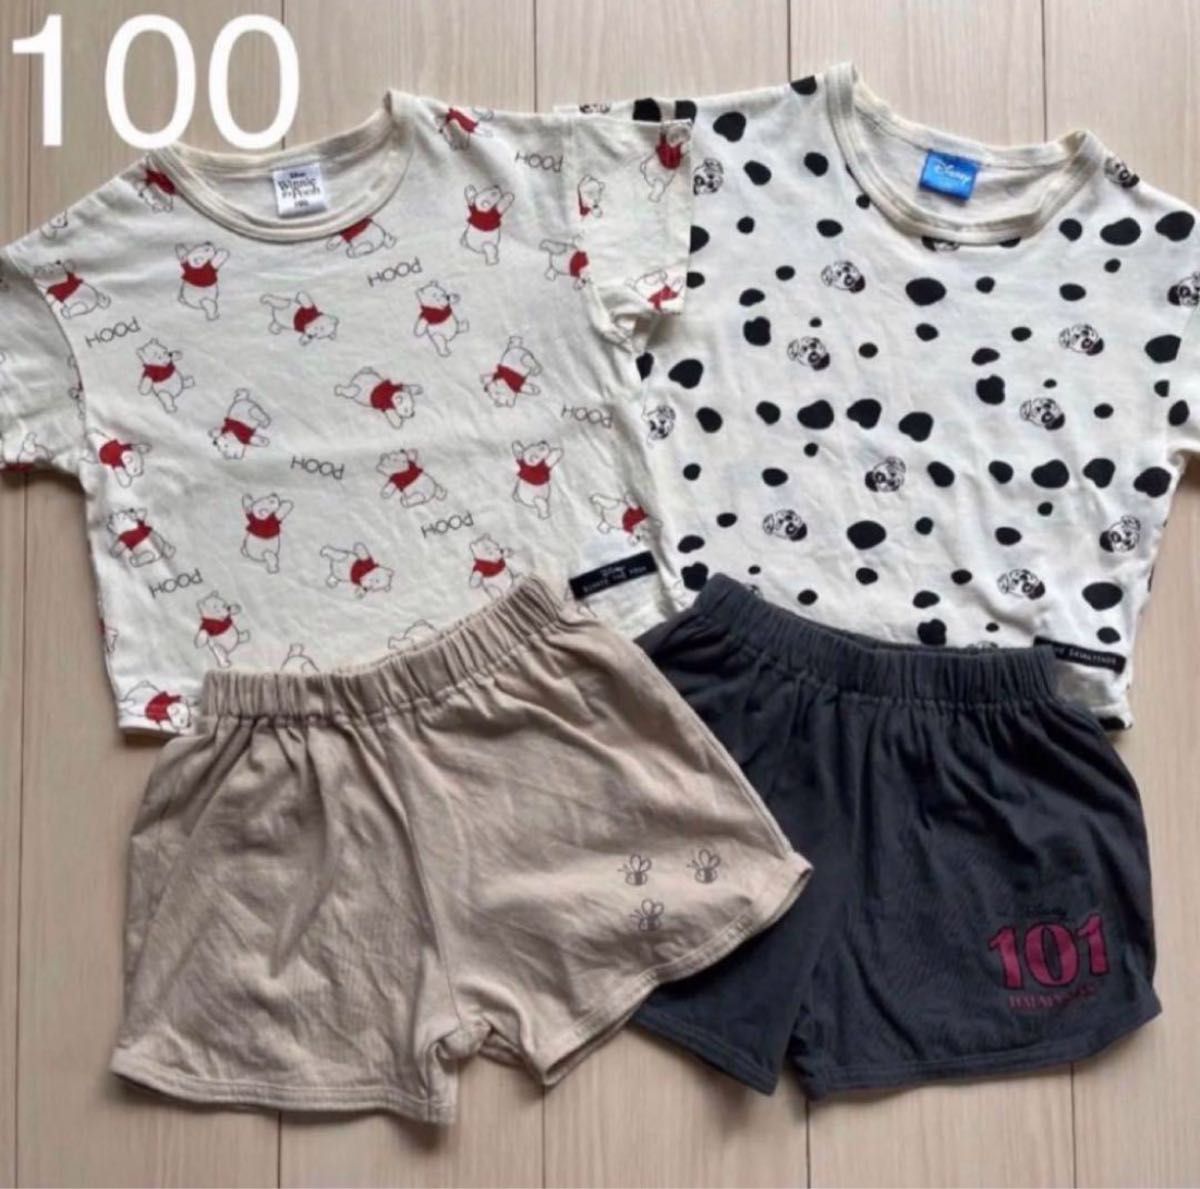 【Disney】ディズニー プーさん☆101匹わんちゃん セットアップ パジャマ Tシャツ ハーフパンツ キャラクター100